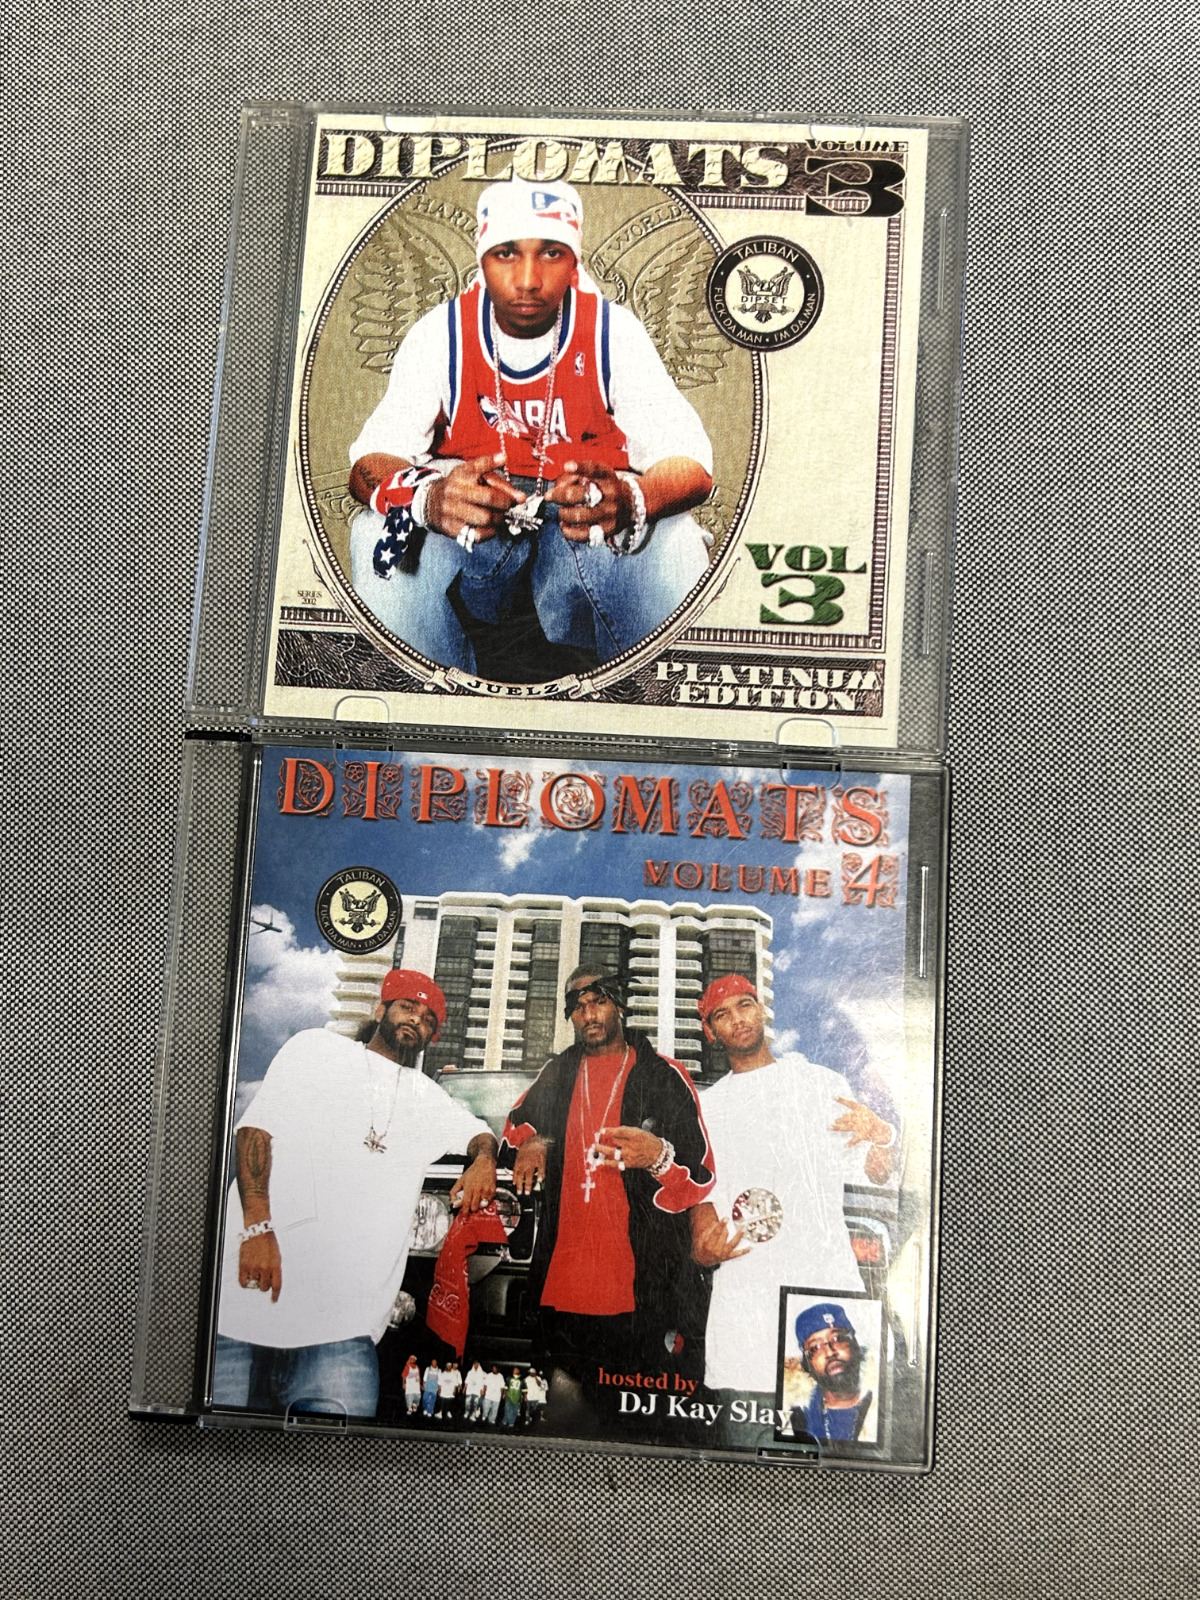 2x Rare Diplomats Vol 2 and 4 Dipset Mixtapes Promo Mix CDS Harlem NYC Camron